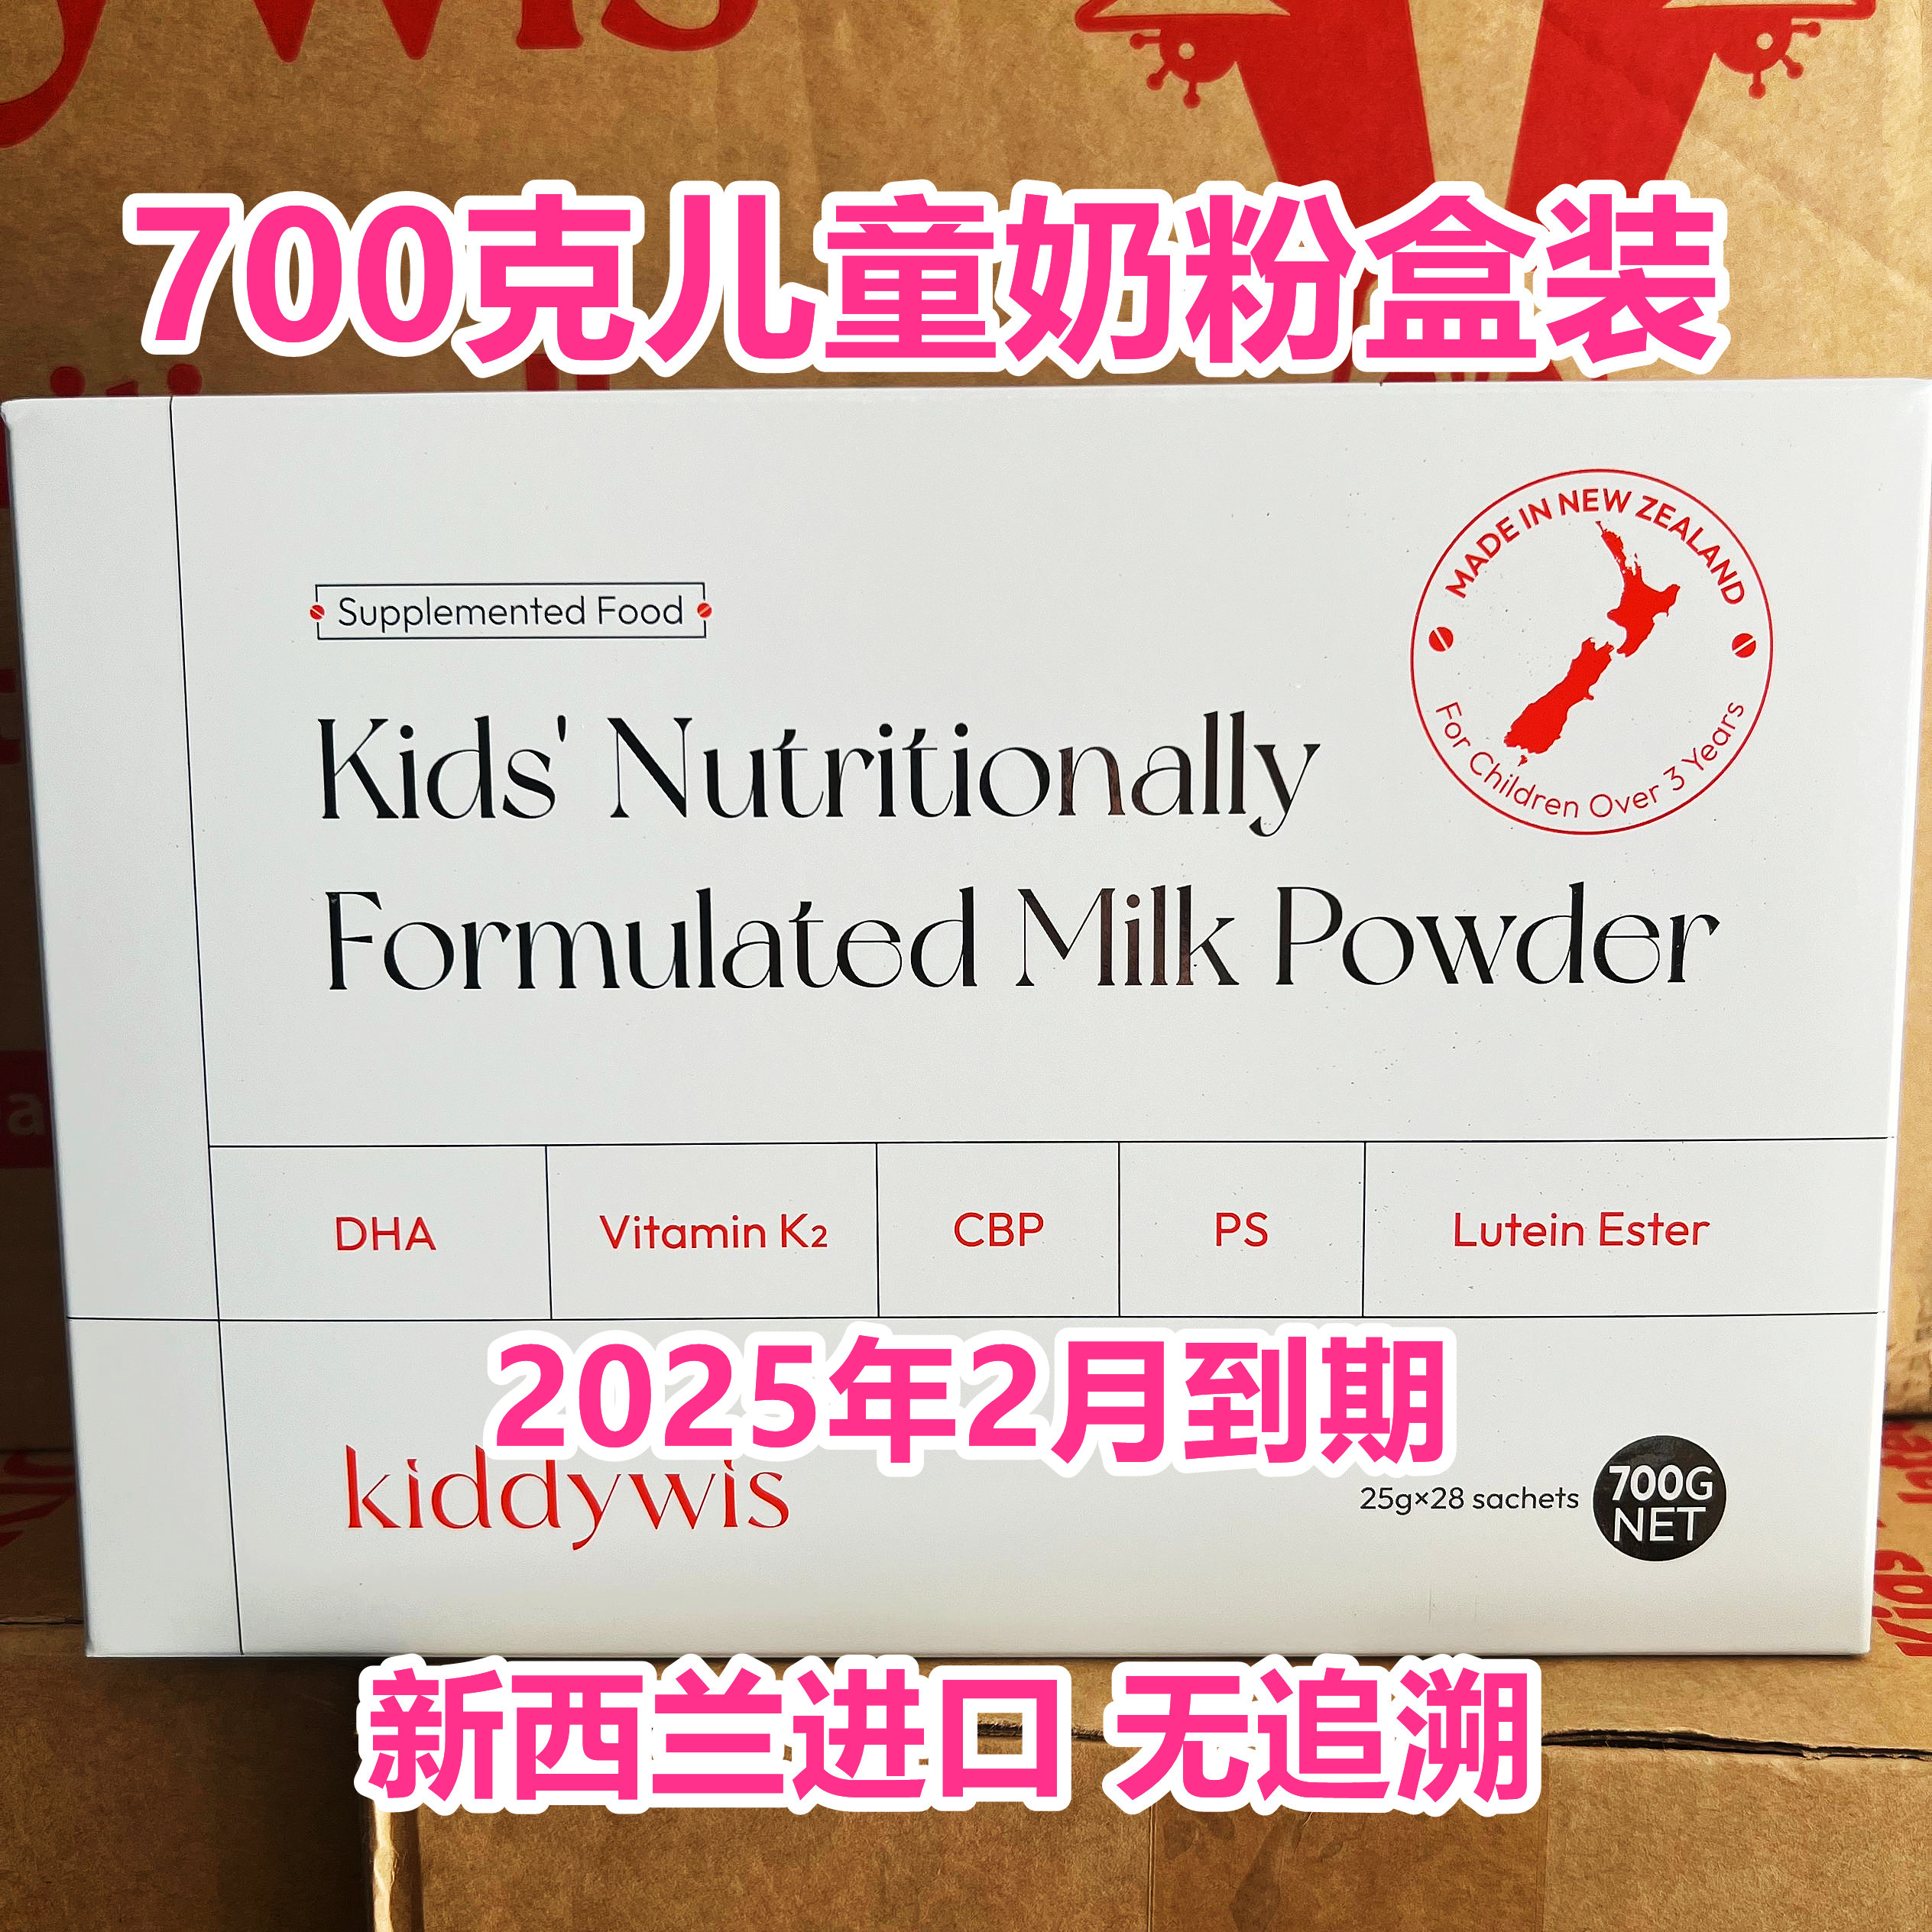 25年2月到期特价临期奶粉新西兰进口儿童营养配方奶粉700克正品